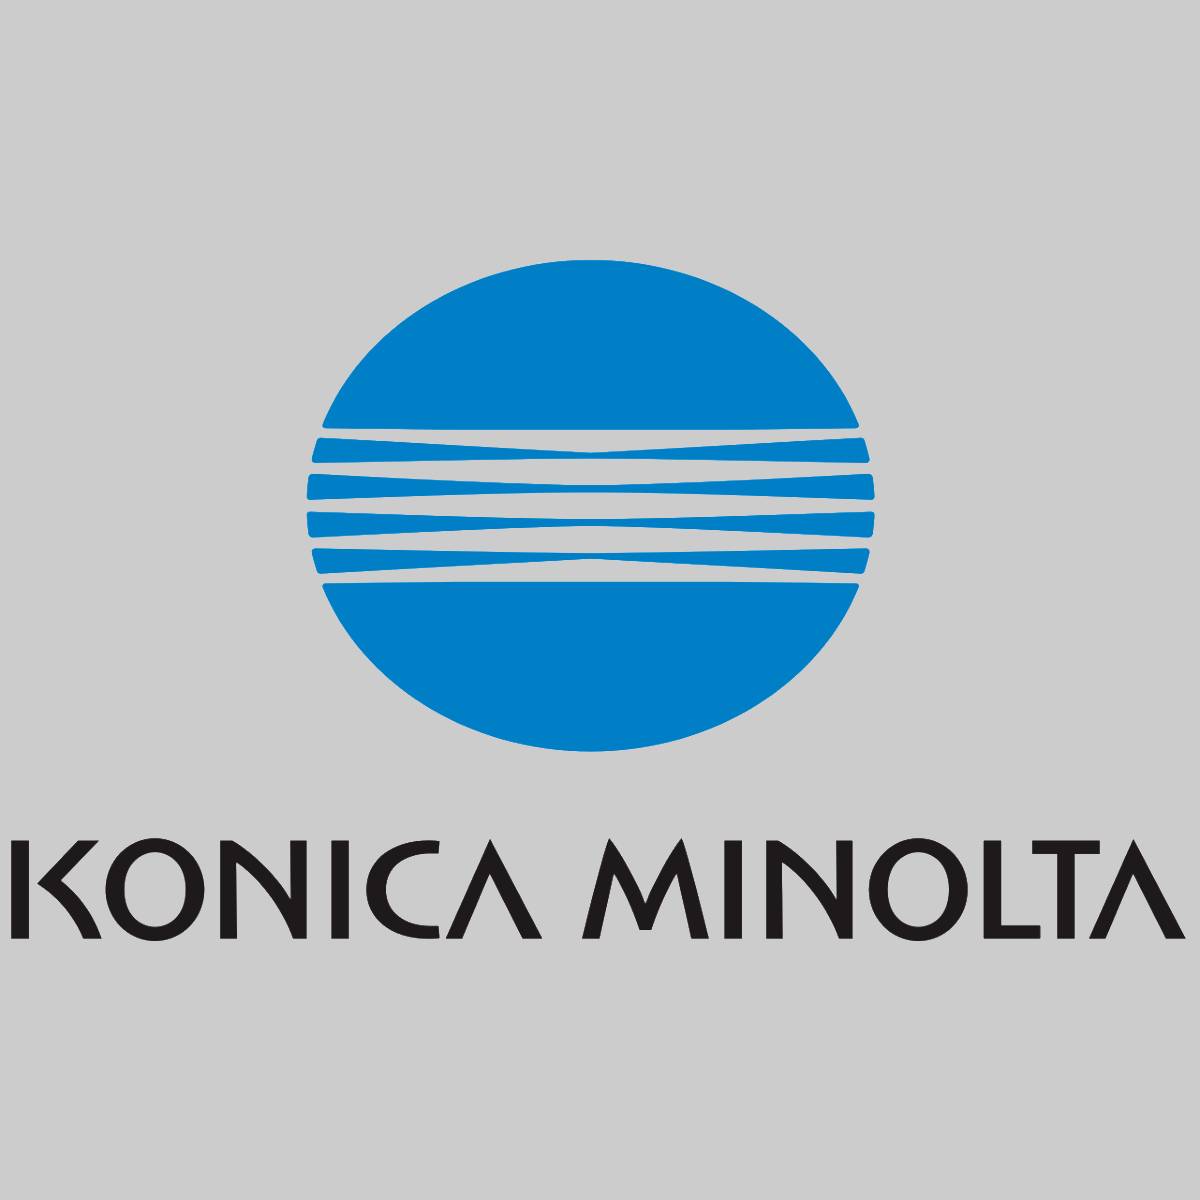 Assemblage d'origine Konica Minolta PWB AA7NH02102 Bizhub C450 C550 C650 Neu OVP^